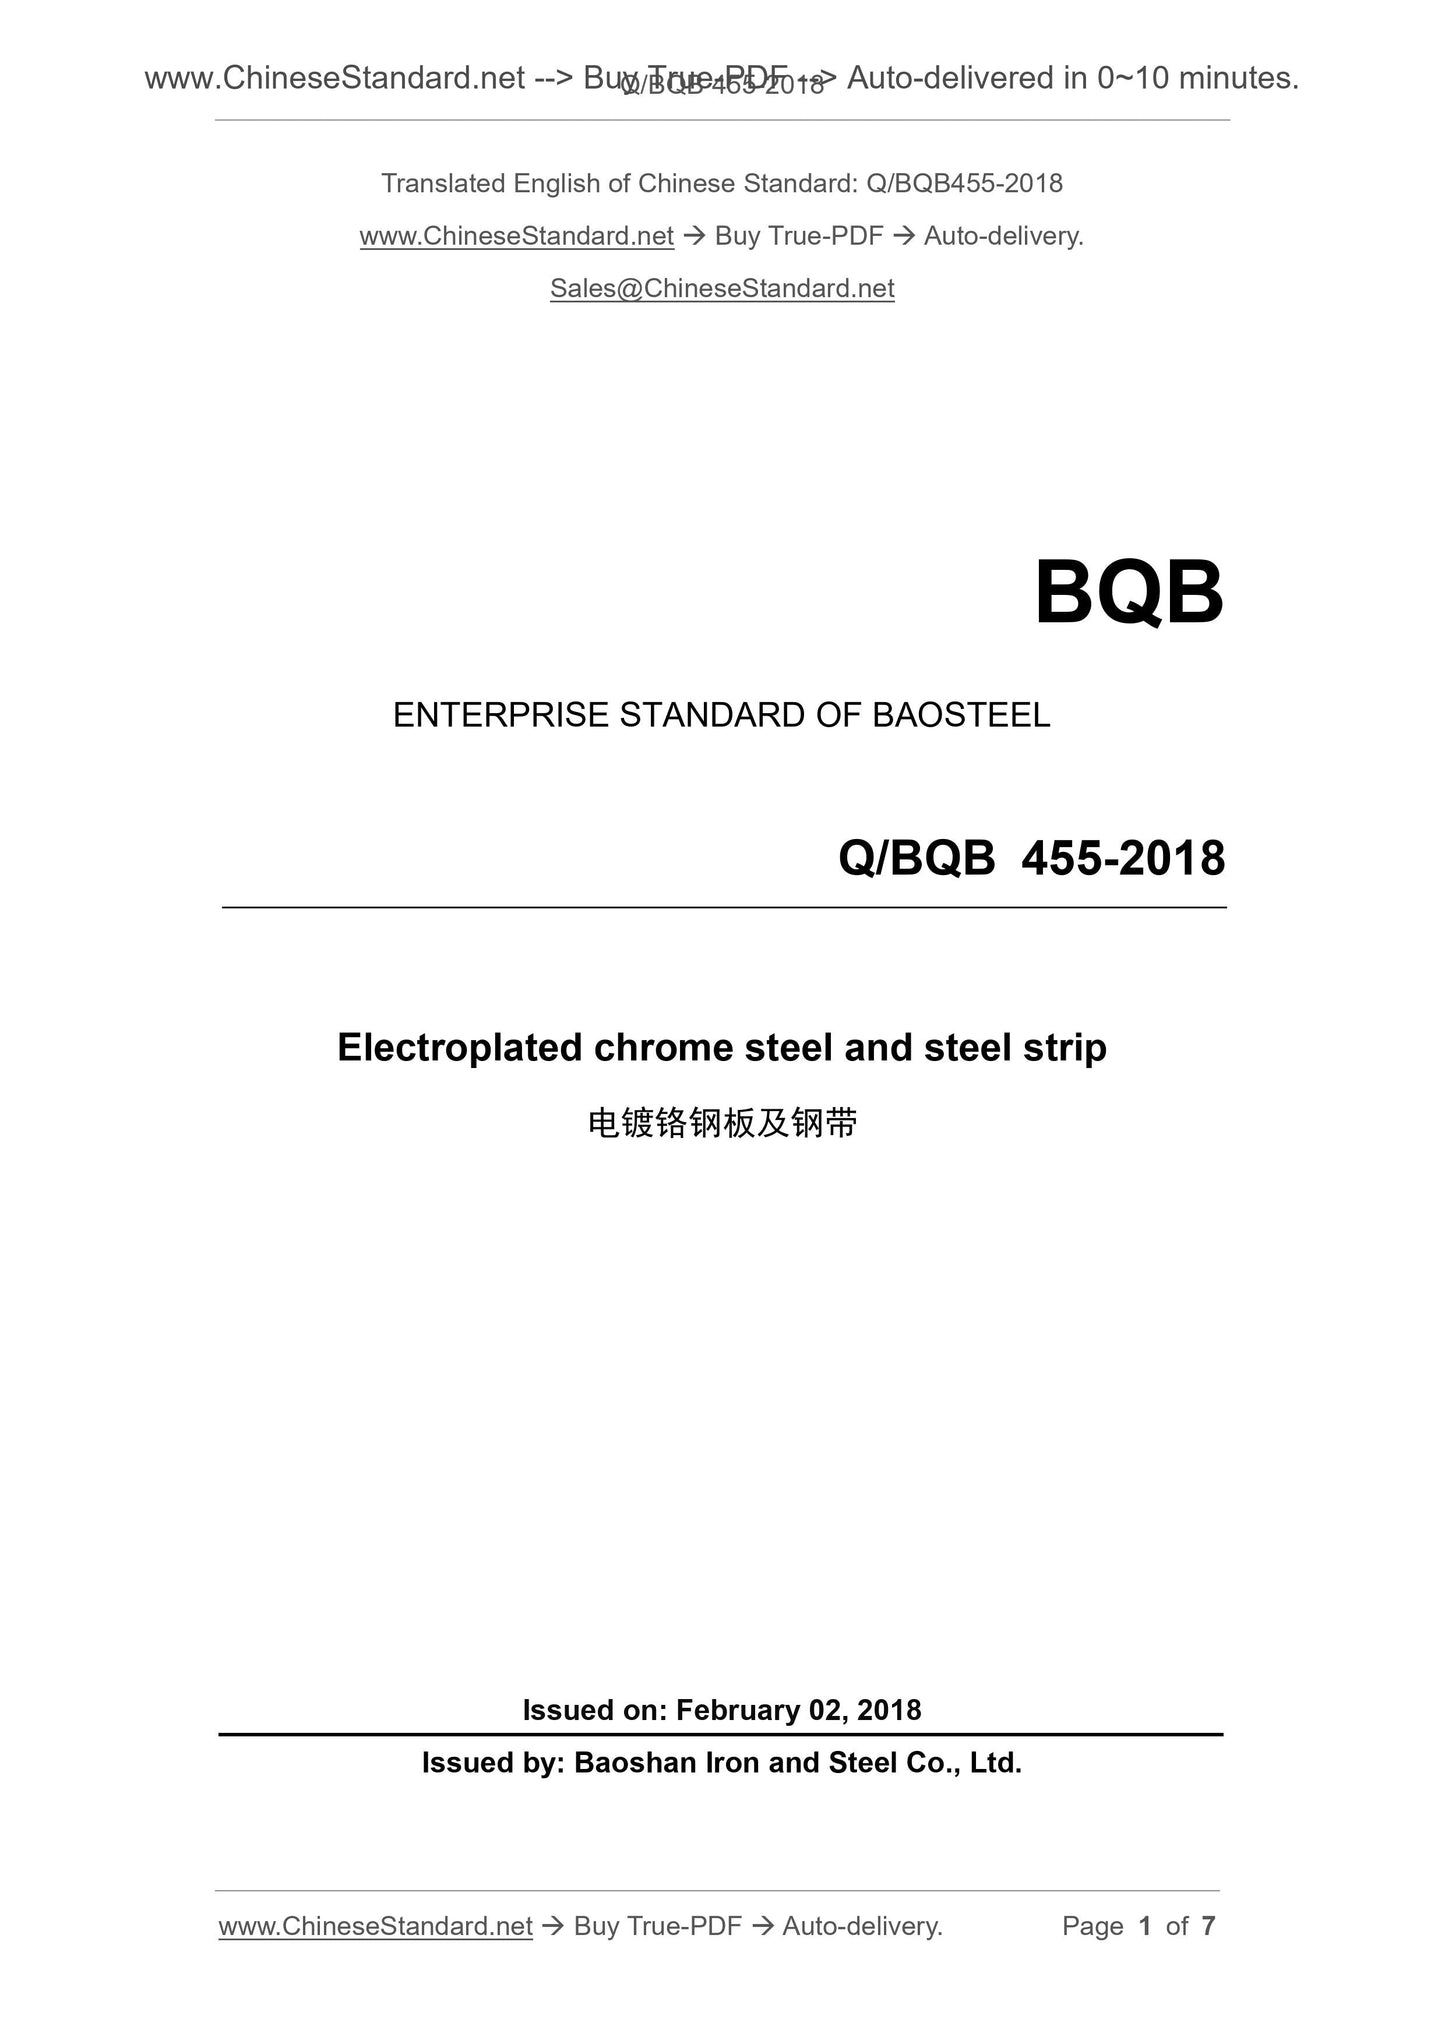 Q/BQB 455-2018 Page 1